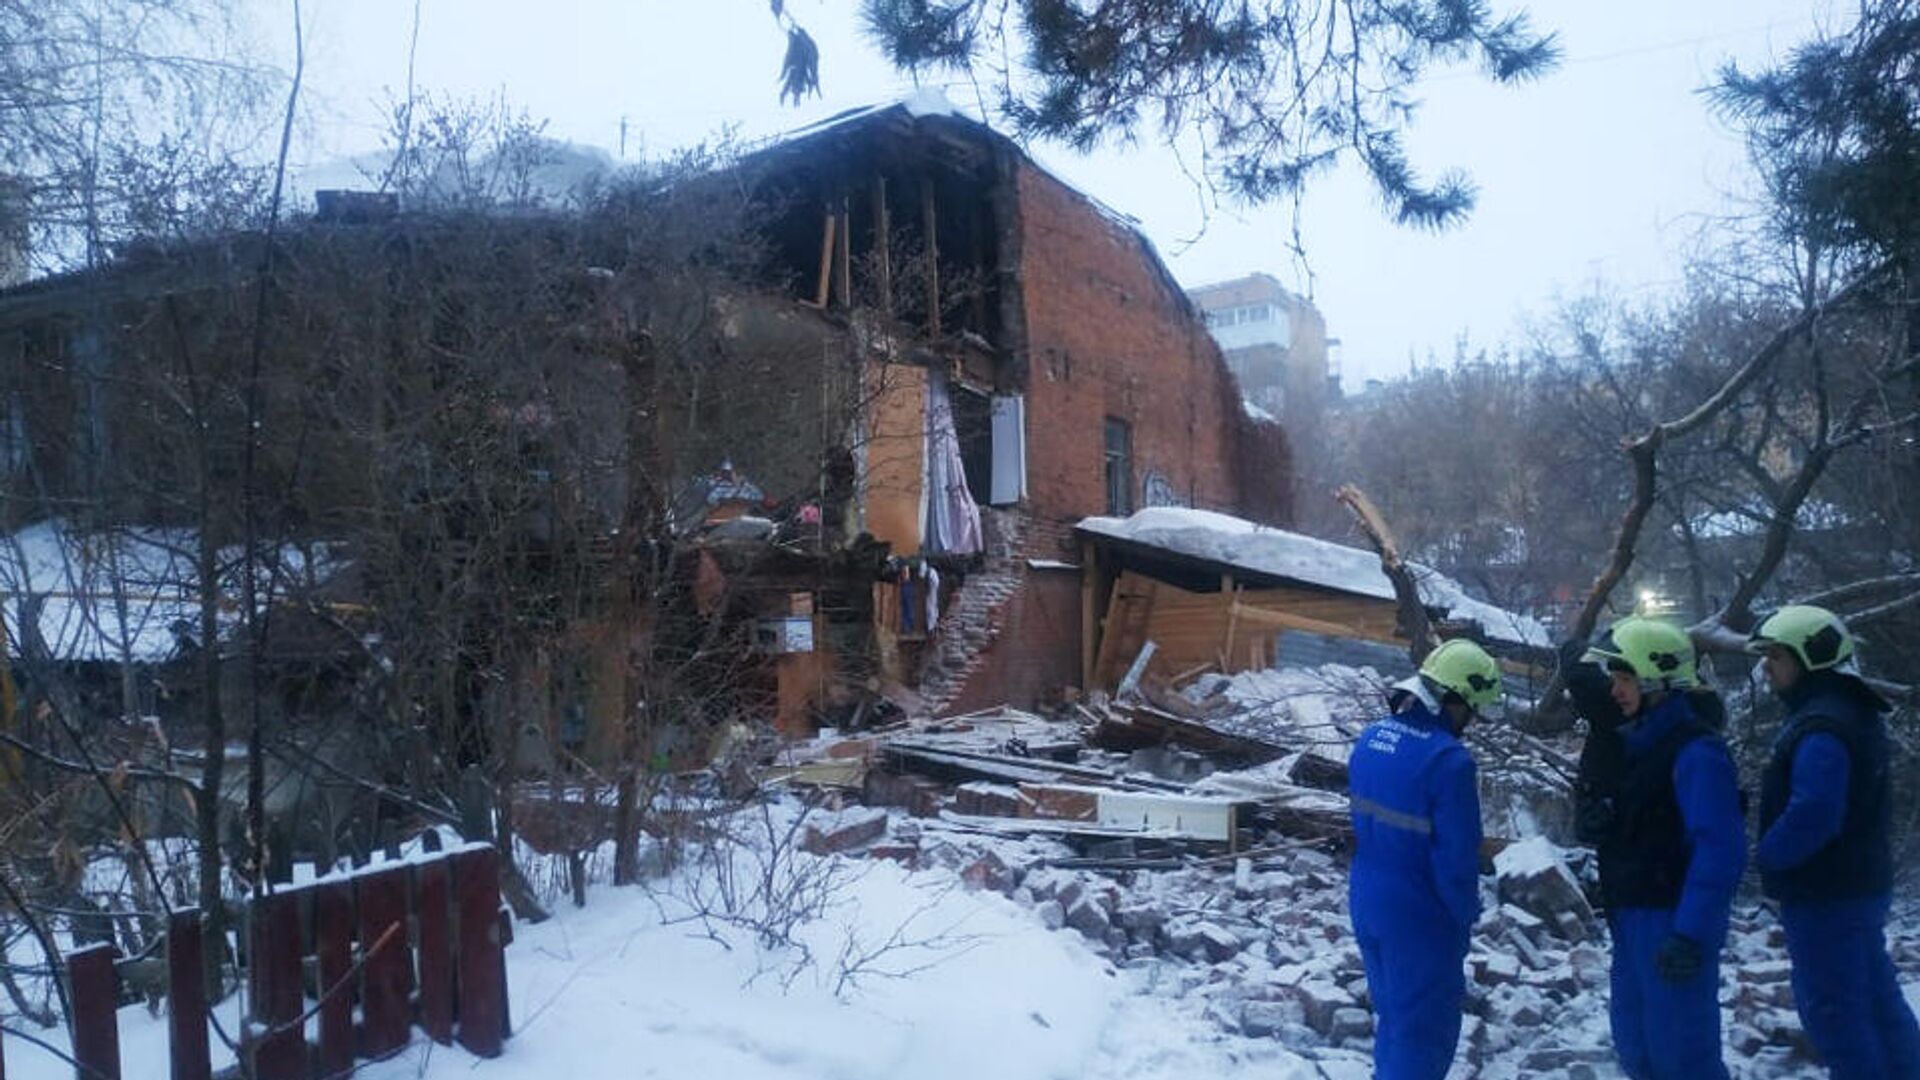 Последствия обрушения стены жилого дома 1909 года постройки - РИА Новости, 1920, 18.03.2021